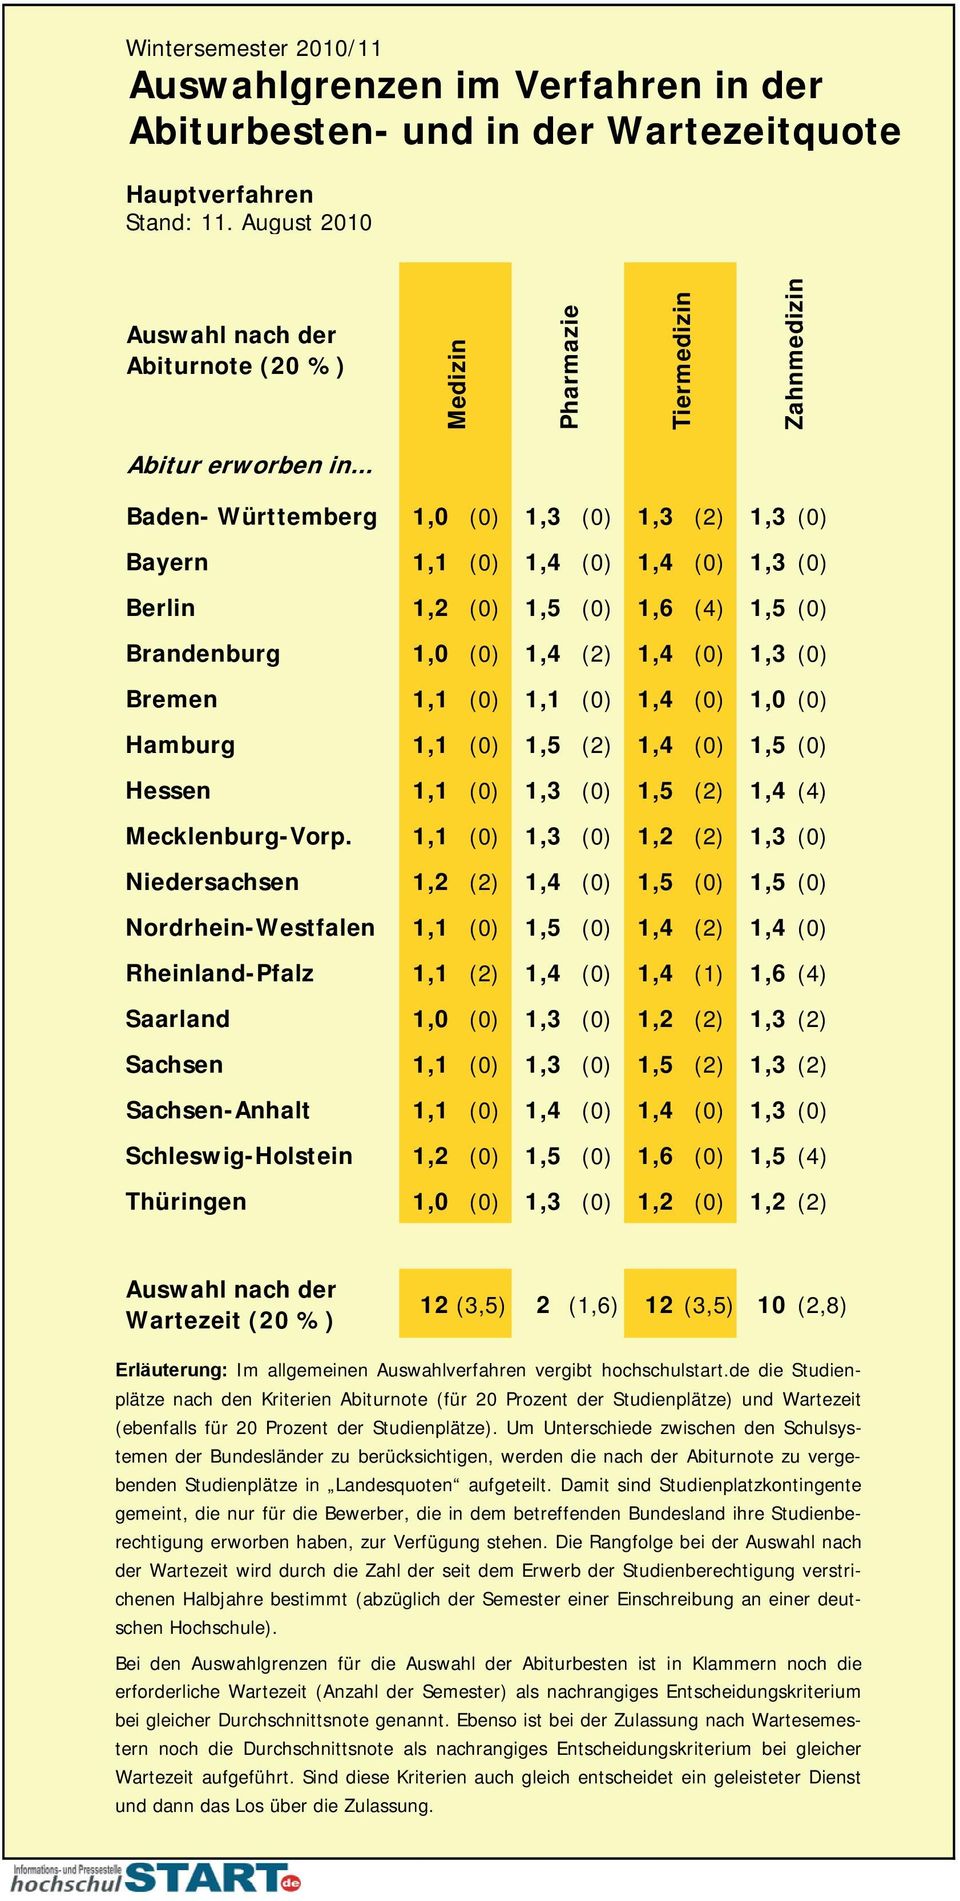 1,4 (0) 1,0 (0) Hamburg 1,1 (0) 1,5 (2) 1,4 (0) 1,5 (0) Hessen 1,1 (0) 1,3 (0) 1,5 (2) 1,4 (4) Mecklenburg-Vorp.